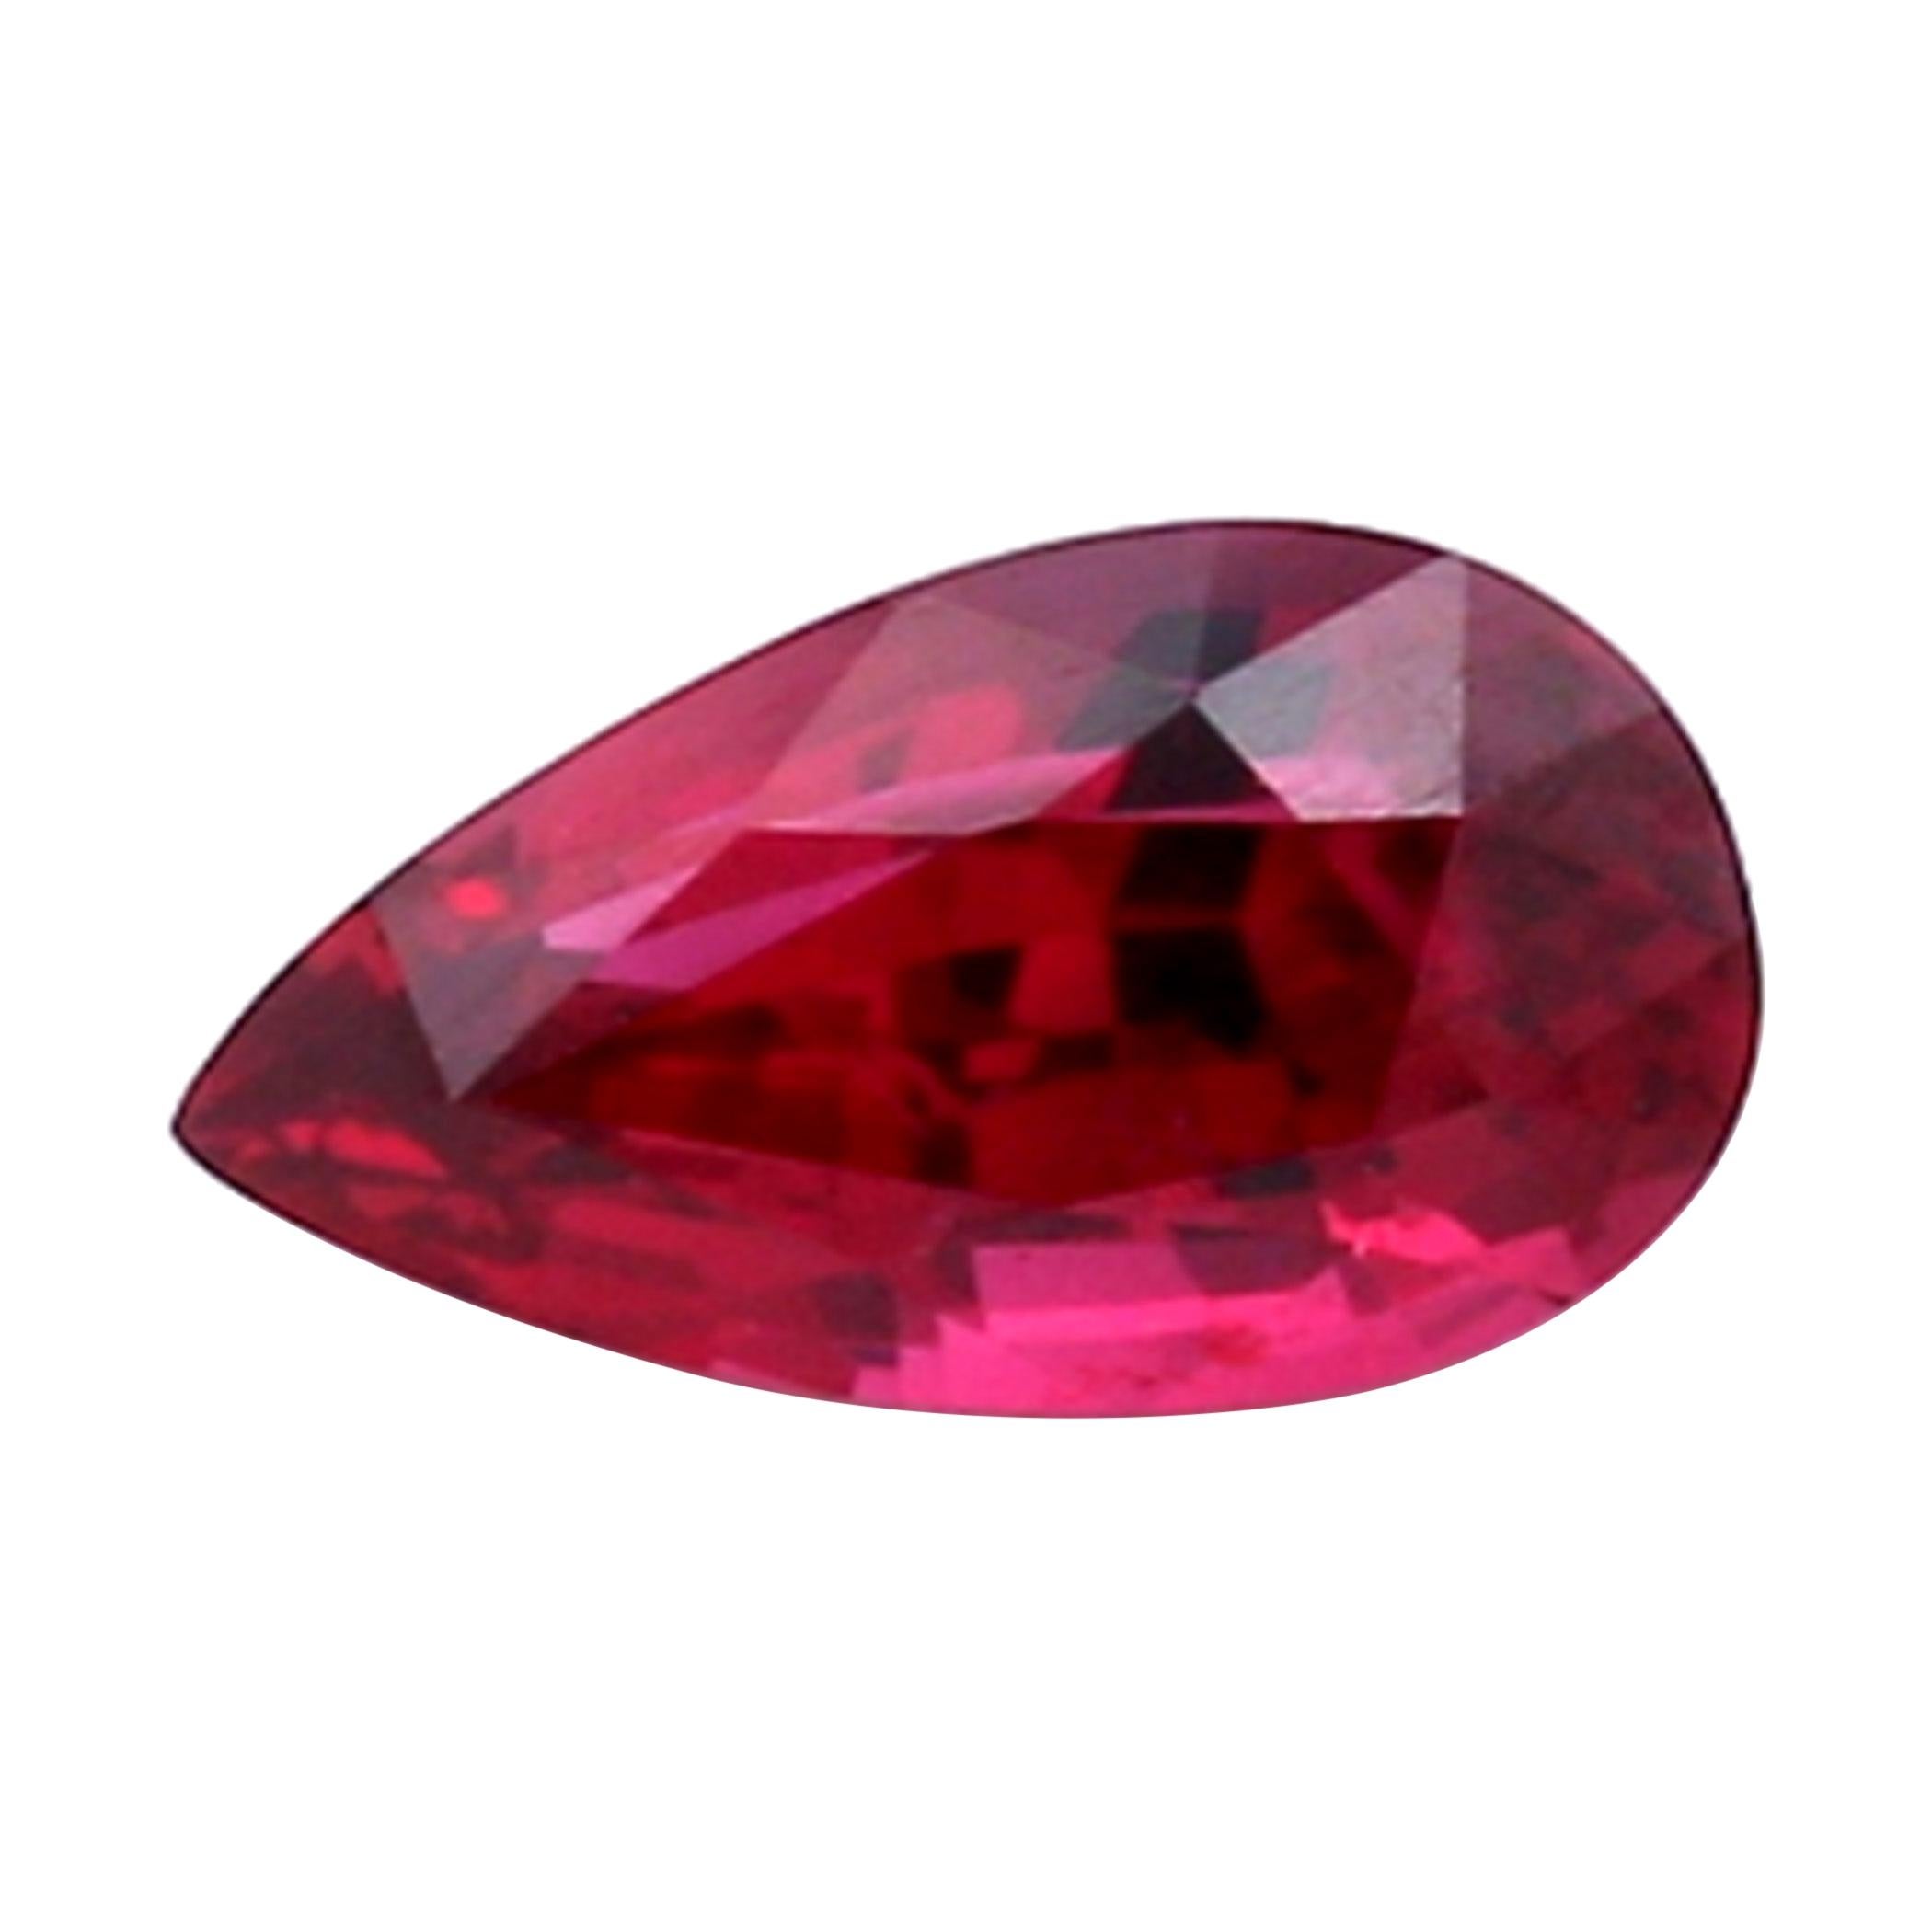 1.01 Carat Natural Pear-Shaped Ruby